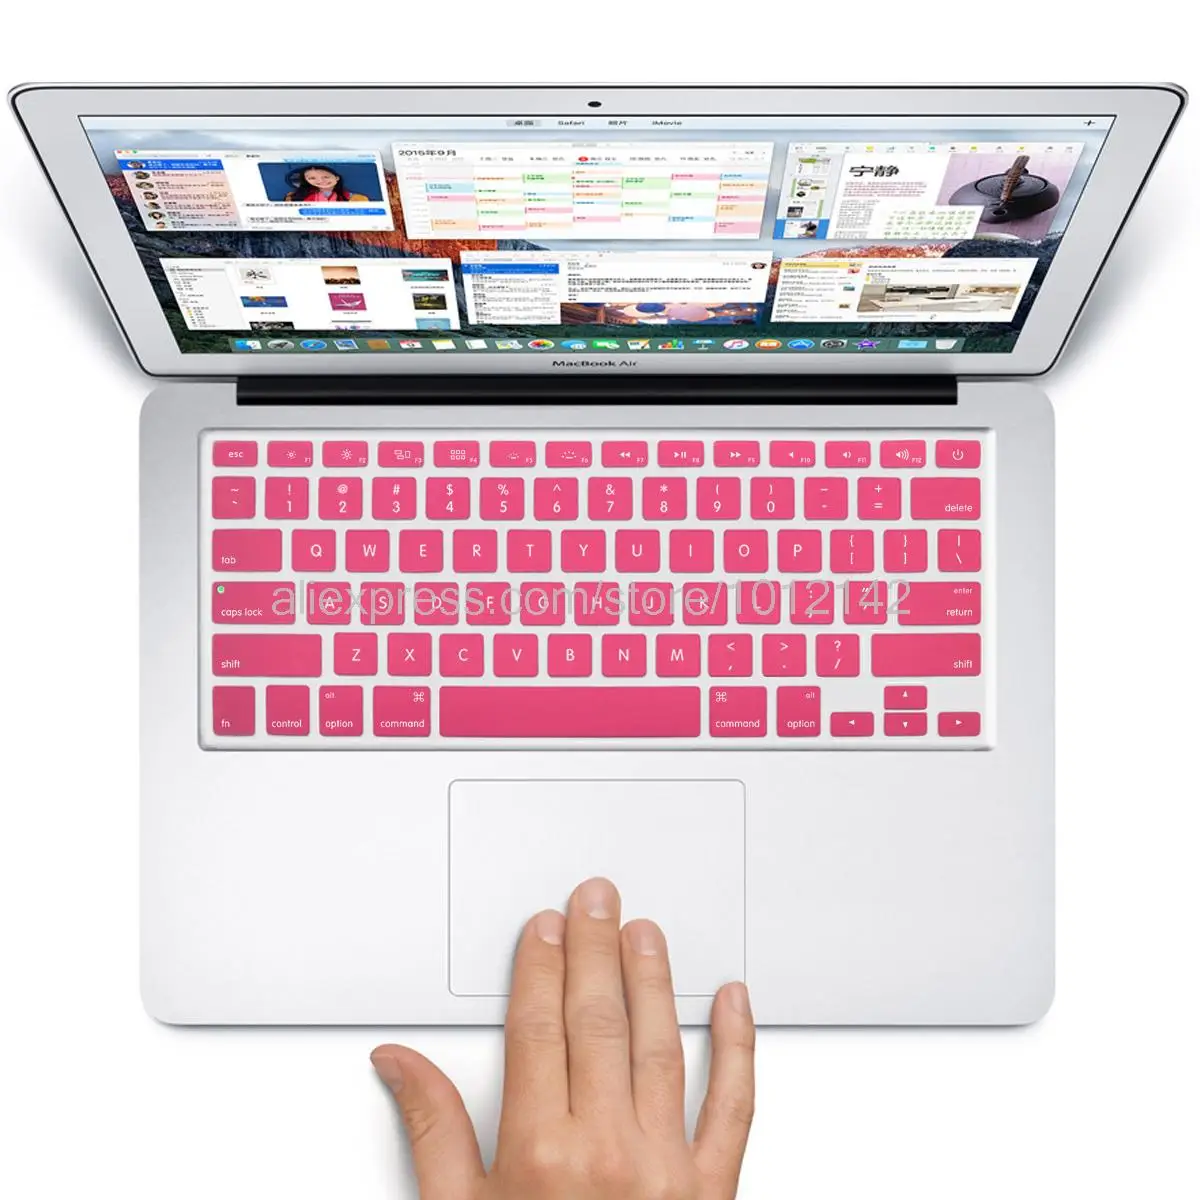 США Макет красочные силиконовые английский клавиатура кожи защита наклейка для 1" 15" 1" Mac MacBook Air pro Retina/IMAC G6